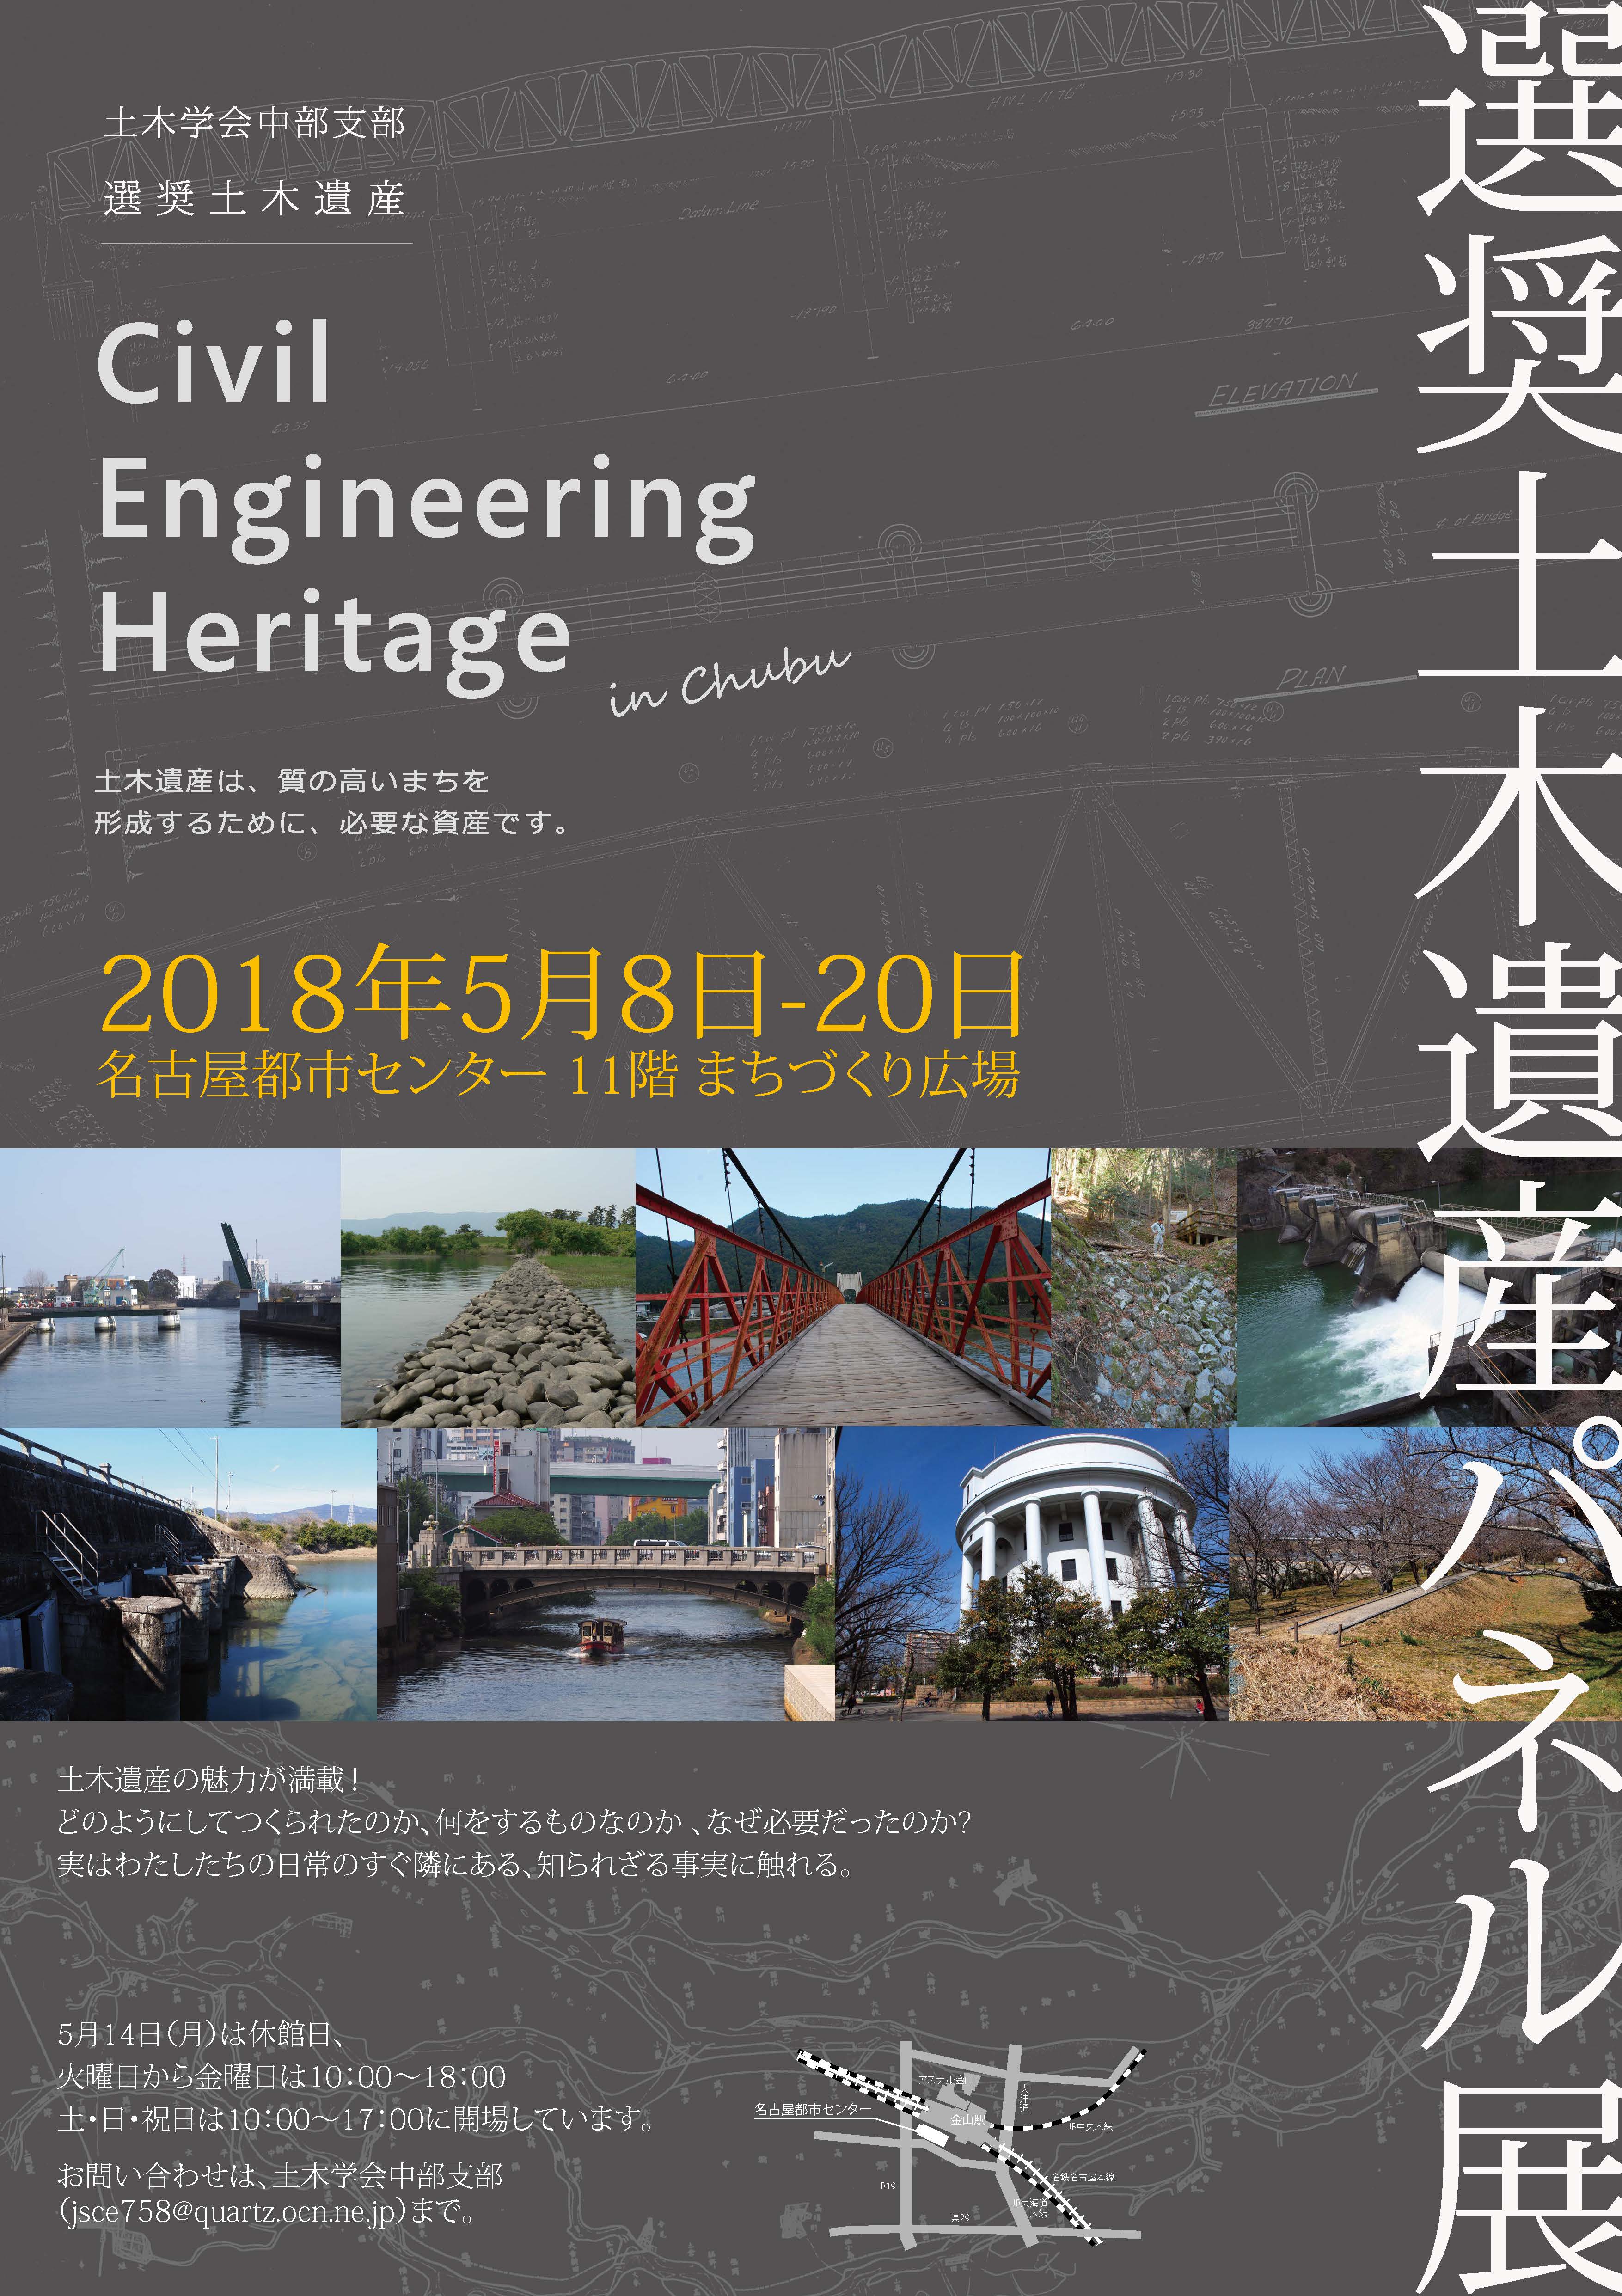 選奨土木遺産パネル展「Civil Engineering Heritage in Chubu 2018」